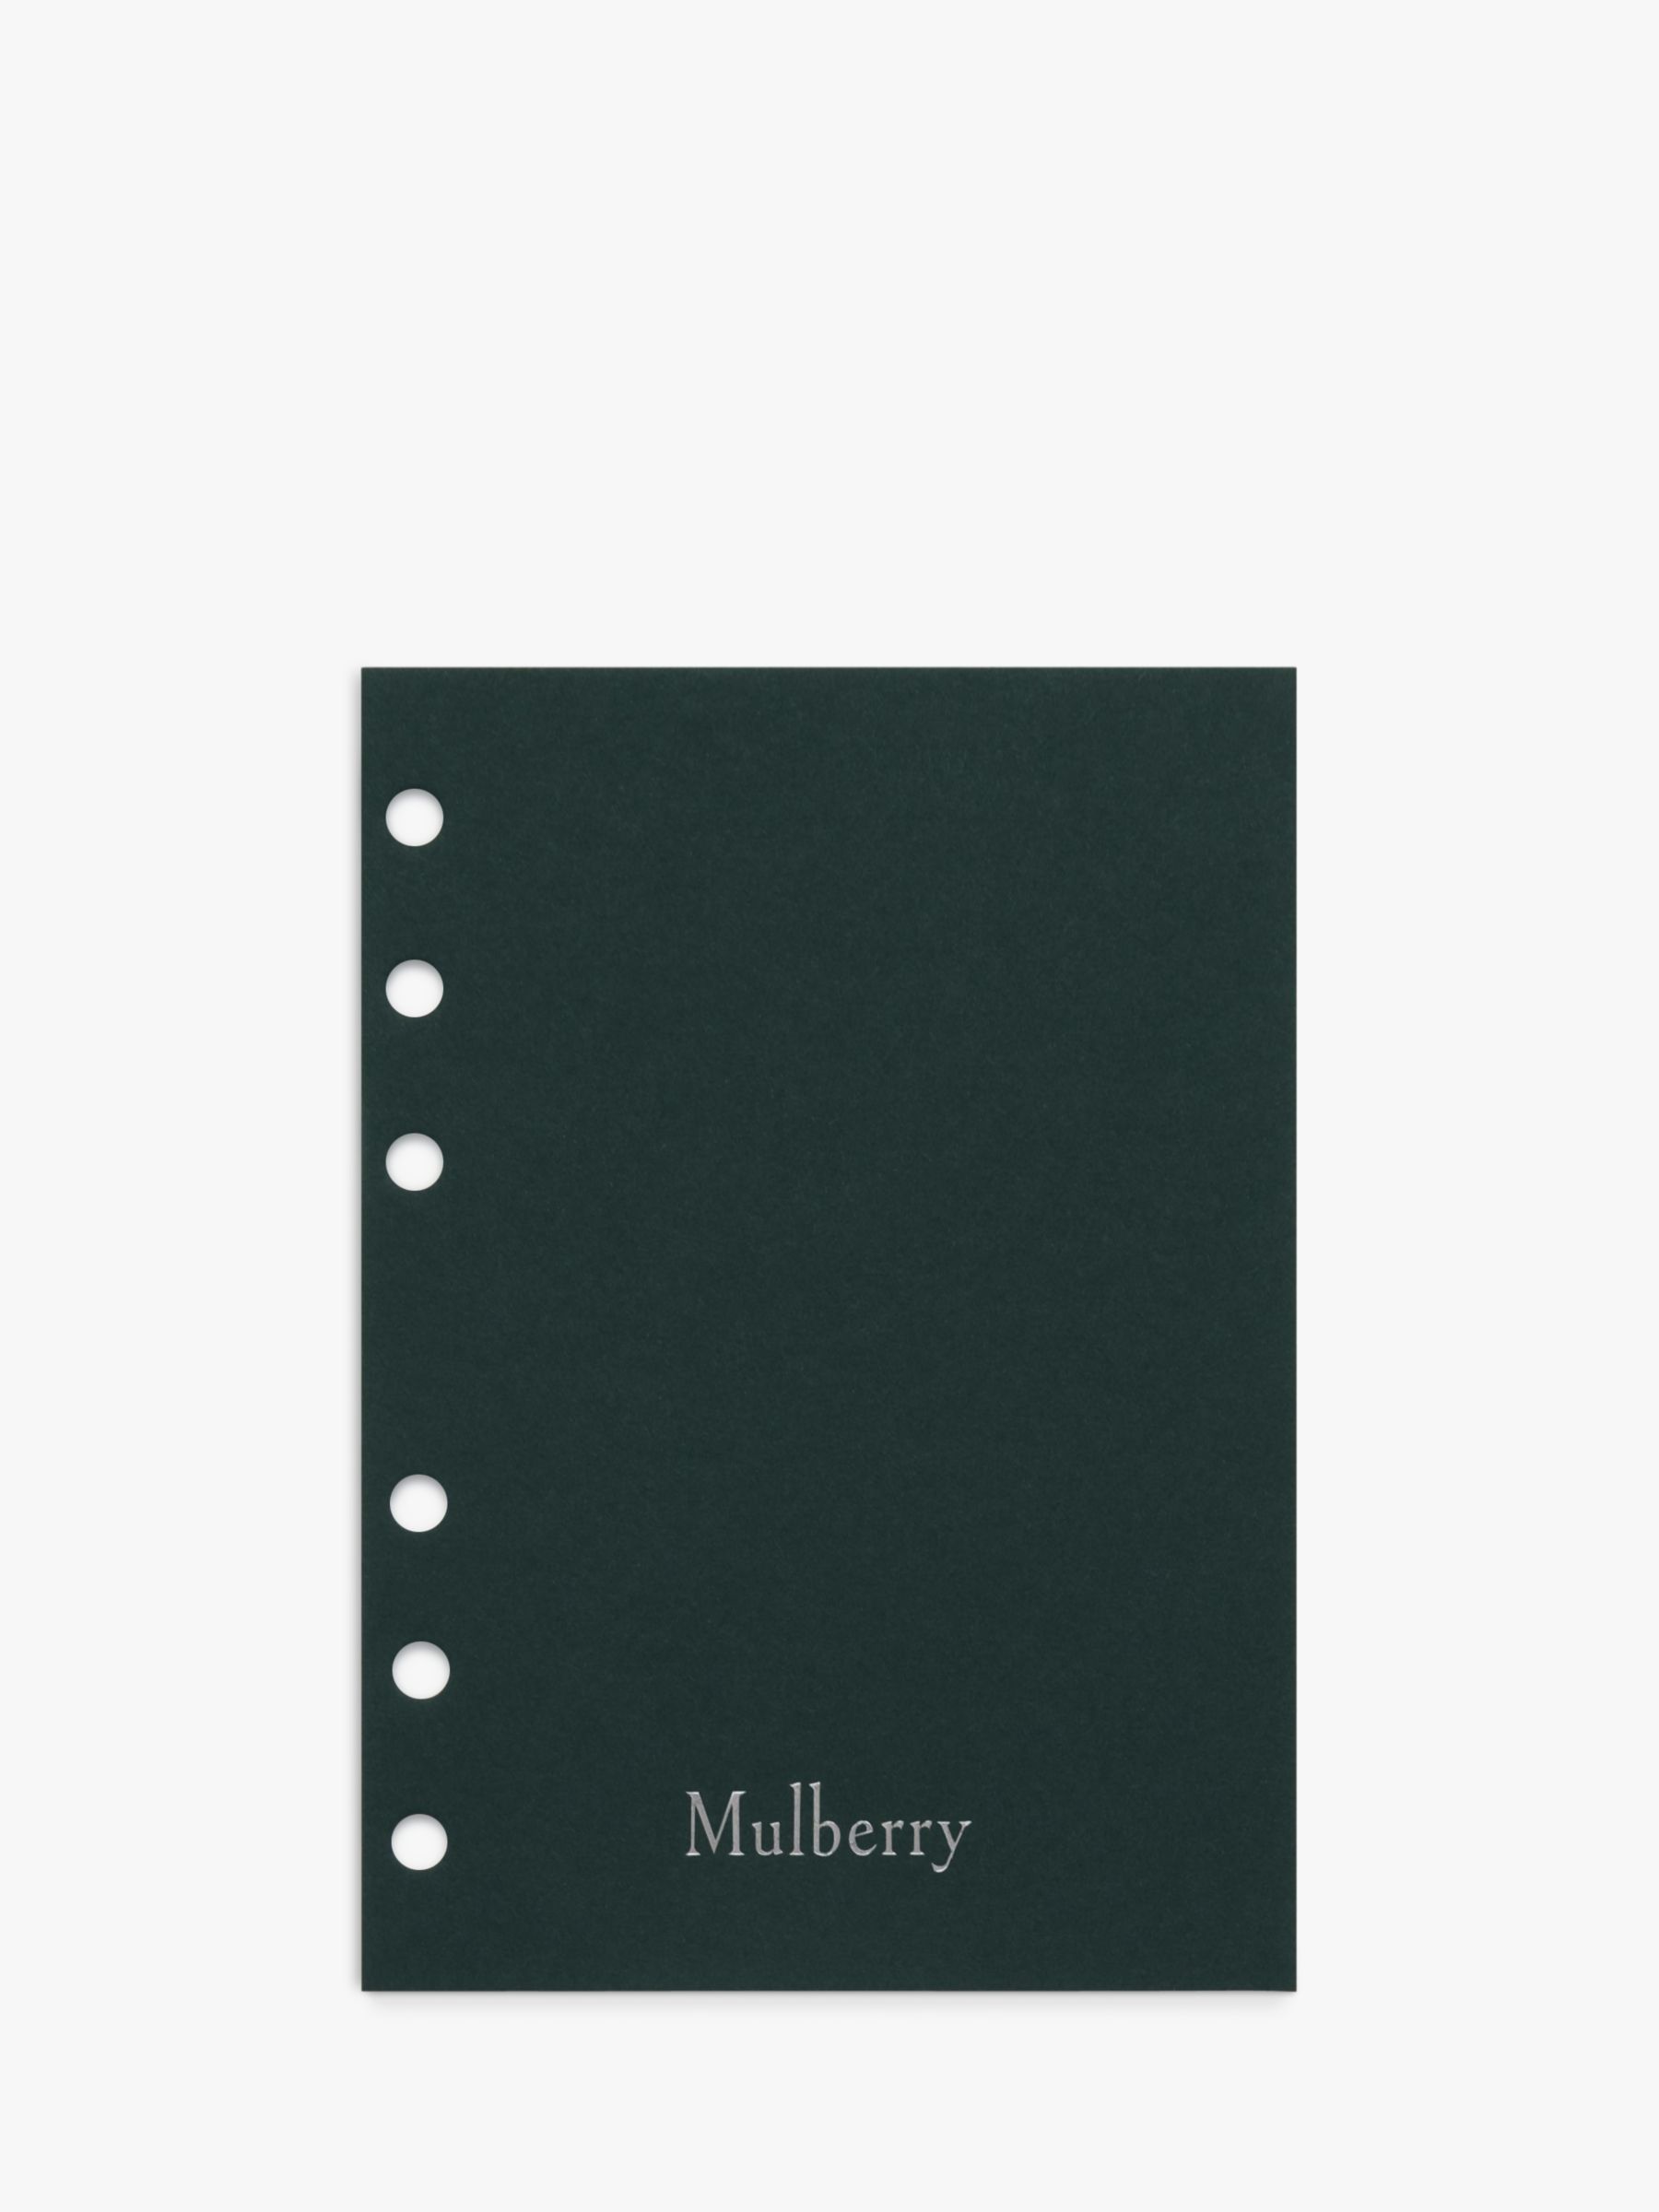 Mulberry 2019 Agenda Diary Insert, White Paper